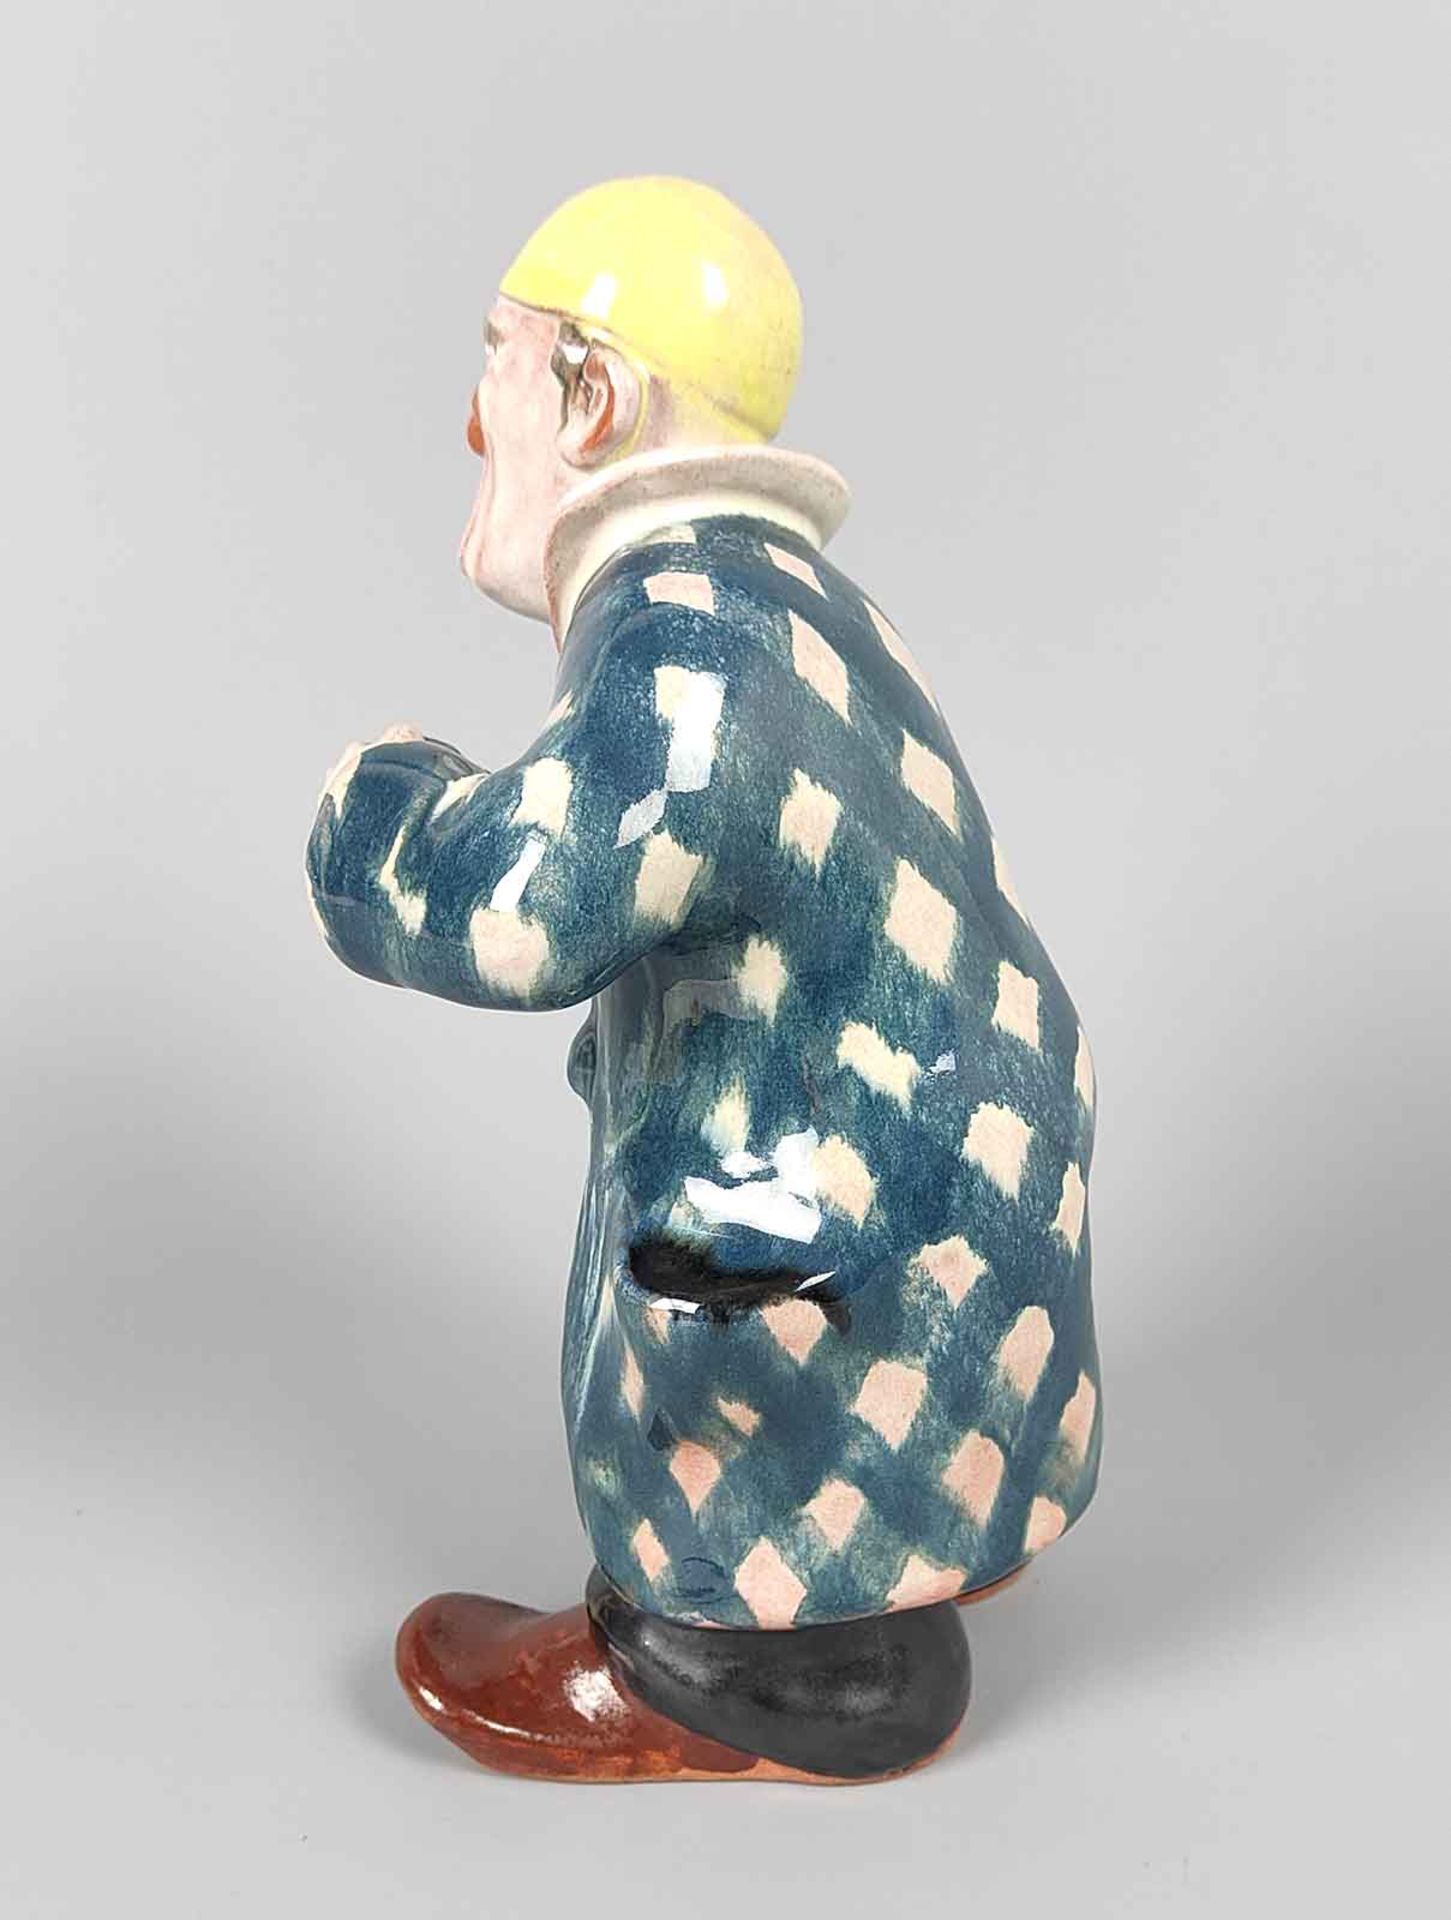 Clown Grock Skulptur - Image 2 of 4